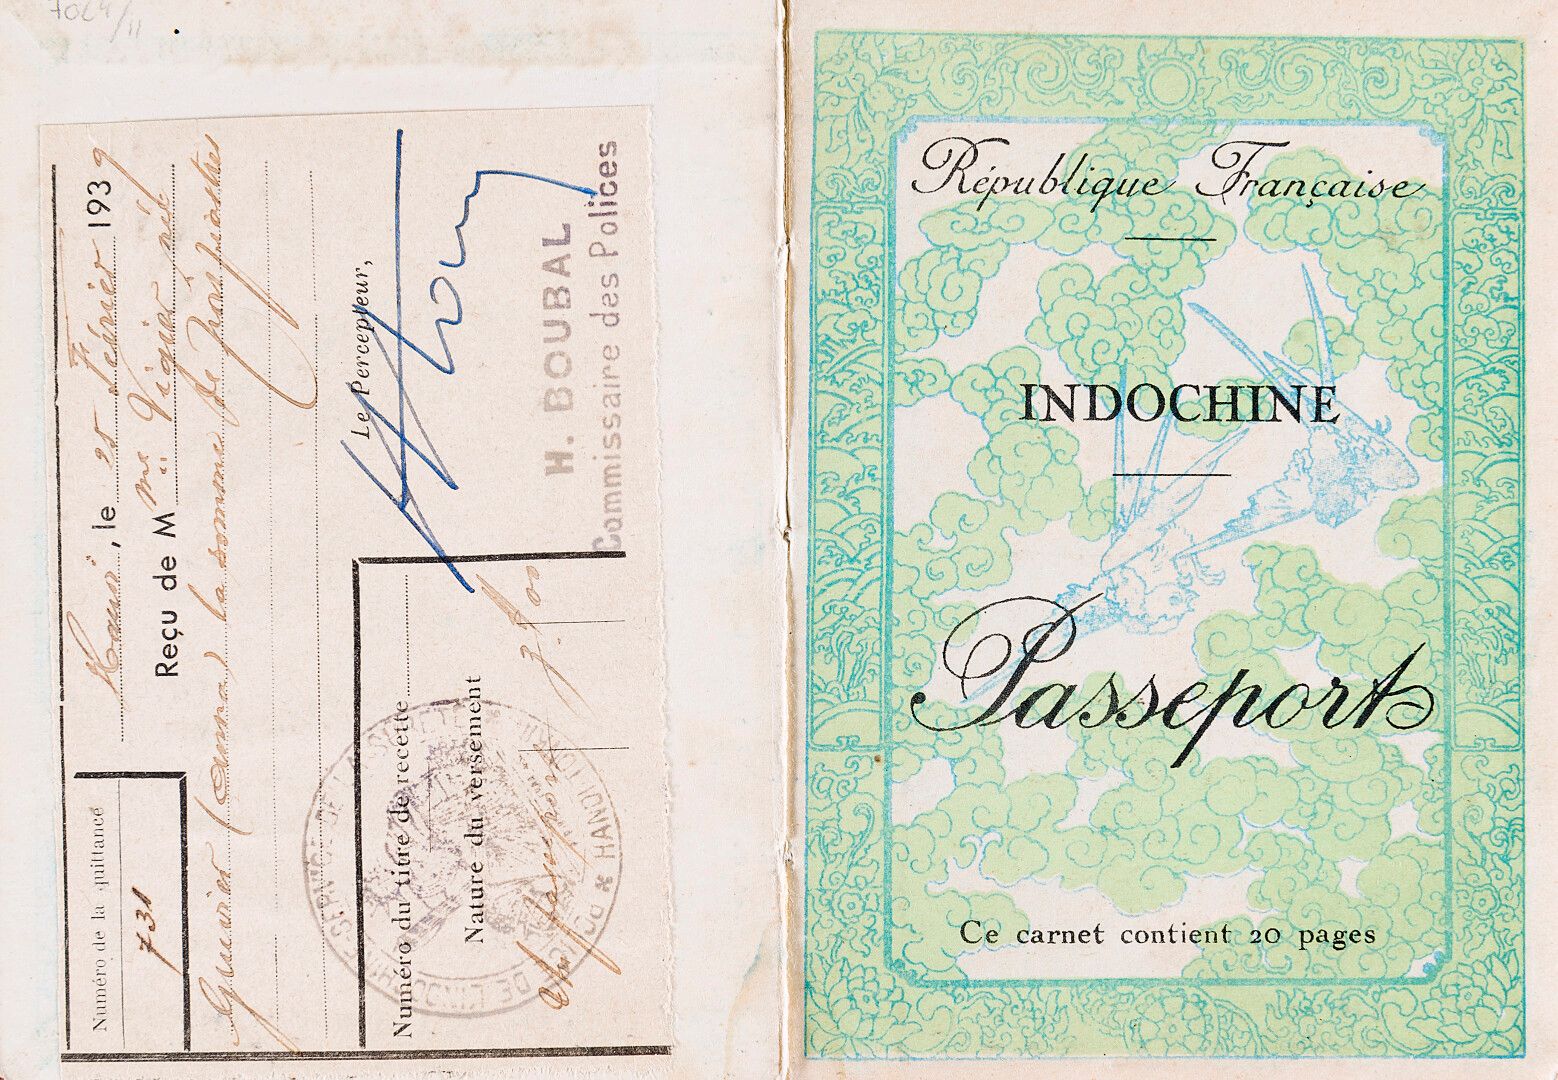 Null Gobierno General de Indochina.

INDOCHINA - Pasaporte.

Copia para una vali&hellip;